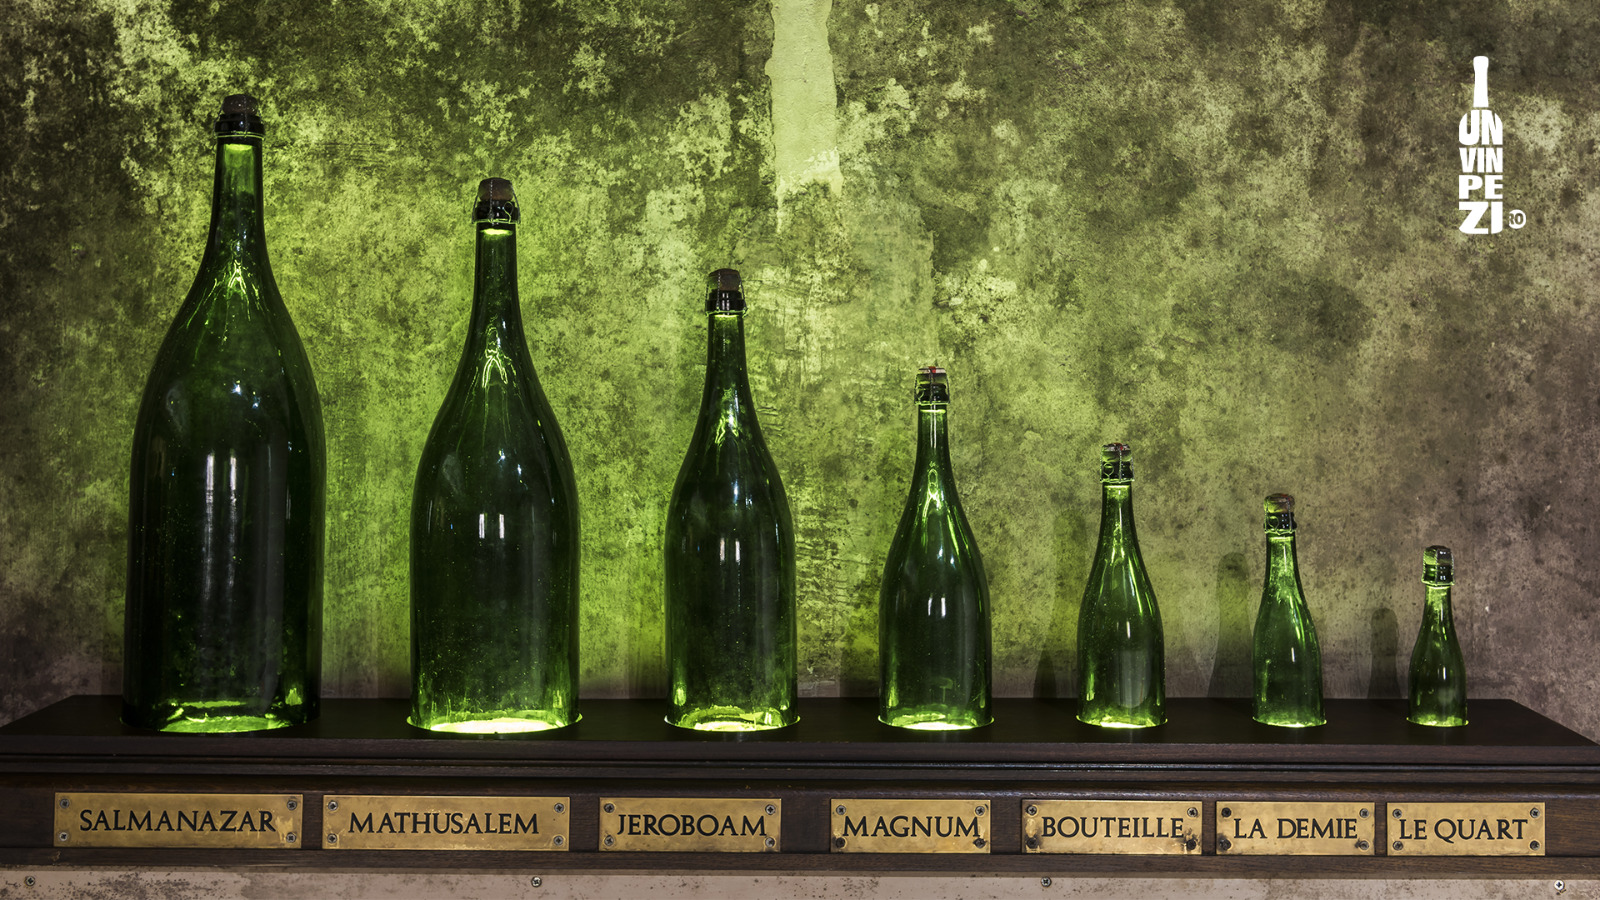 De la Split sau Magnum până la Salmanazar sau Melchior - care sunt semnificaţiile din spatele denumirilor sticlelor de vin